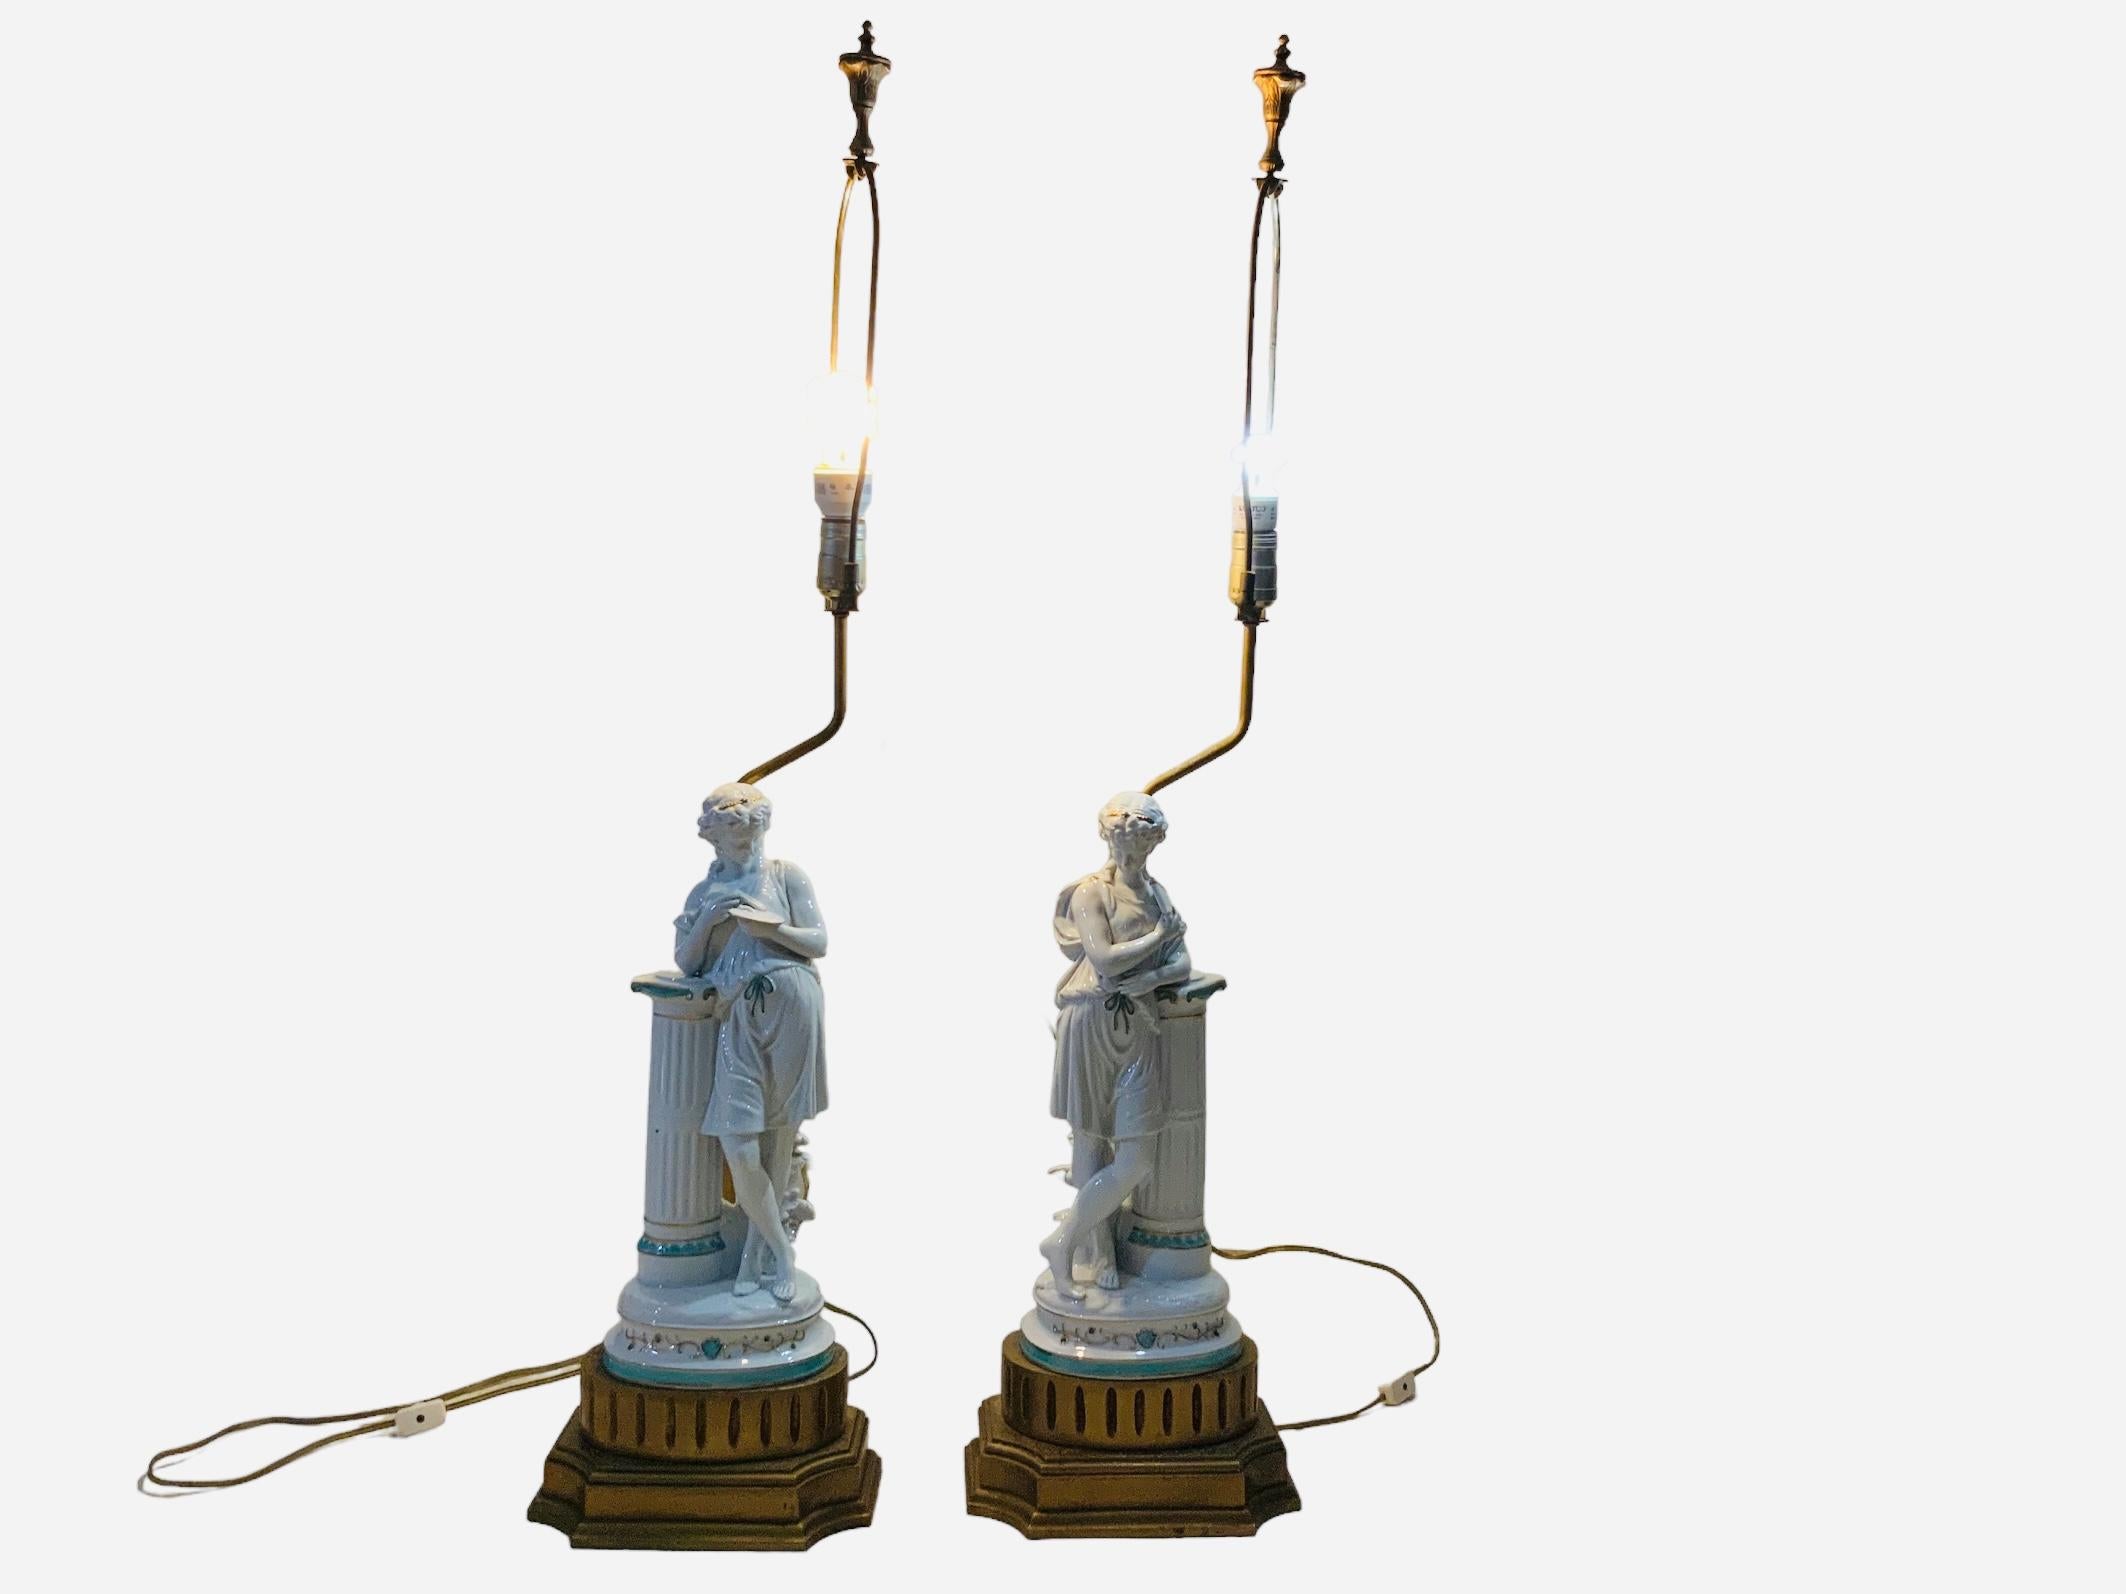 Neoclassical Revival Minton Porcelain Pair Of Greek/ Roman Figures Sculptures Table Lamps For Sale